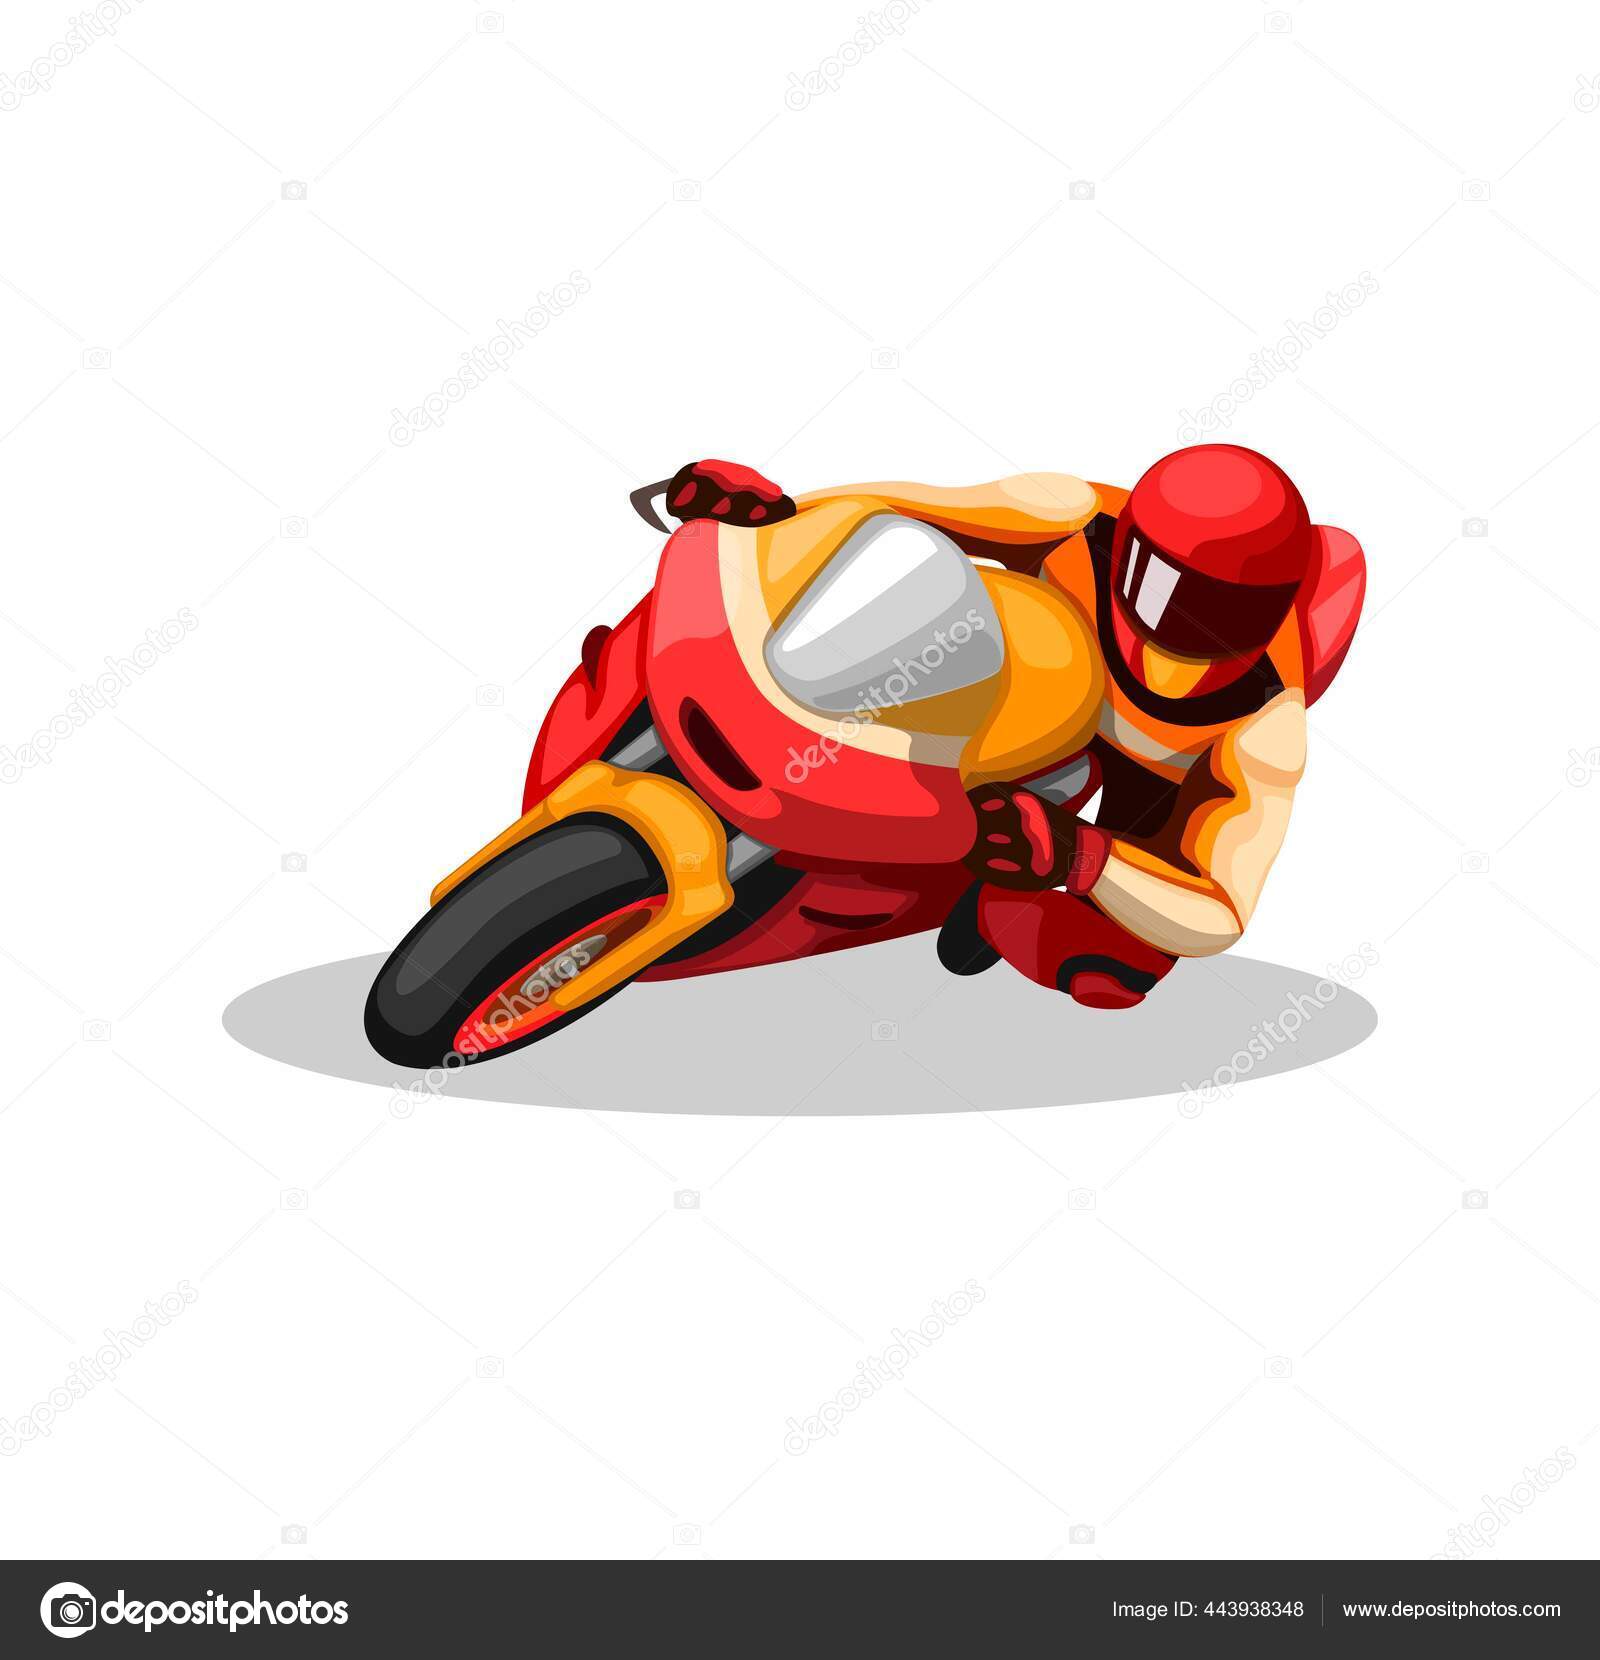 piloto de moto, vetor de ilustração de corrida de moto em fundo